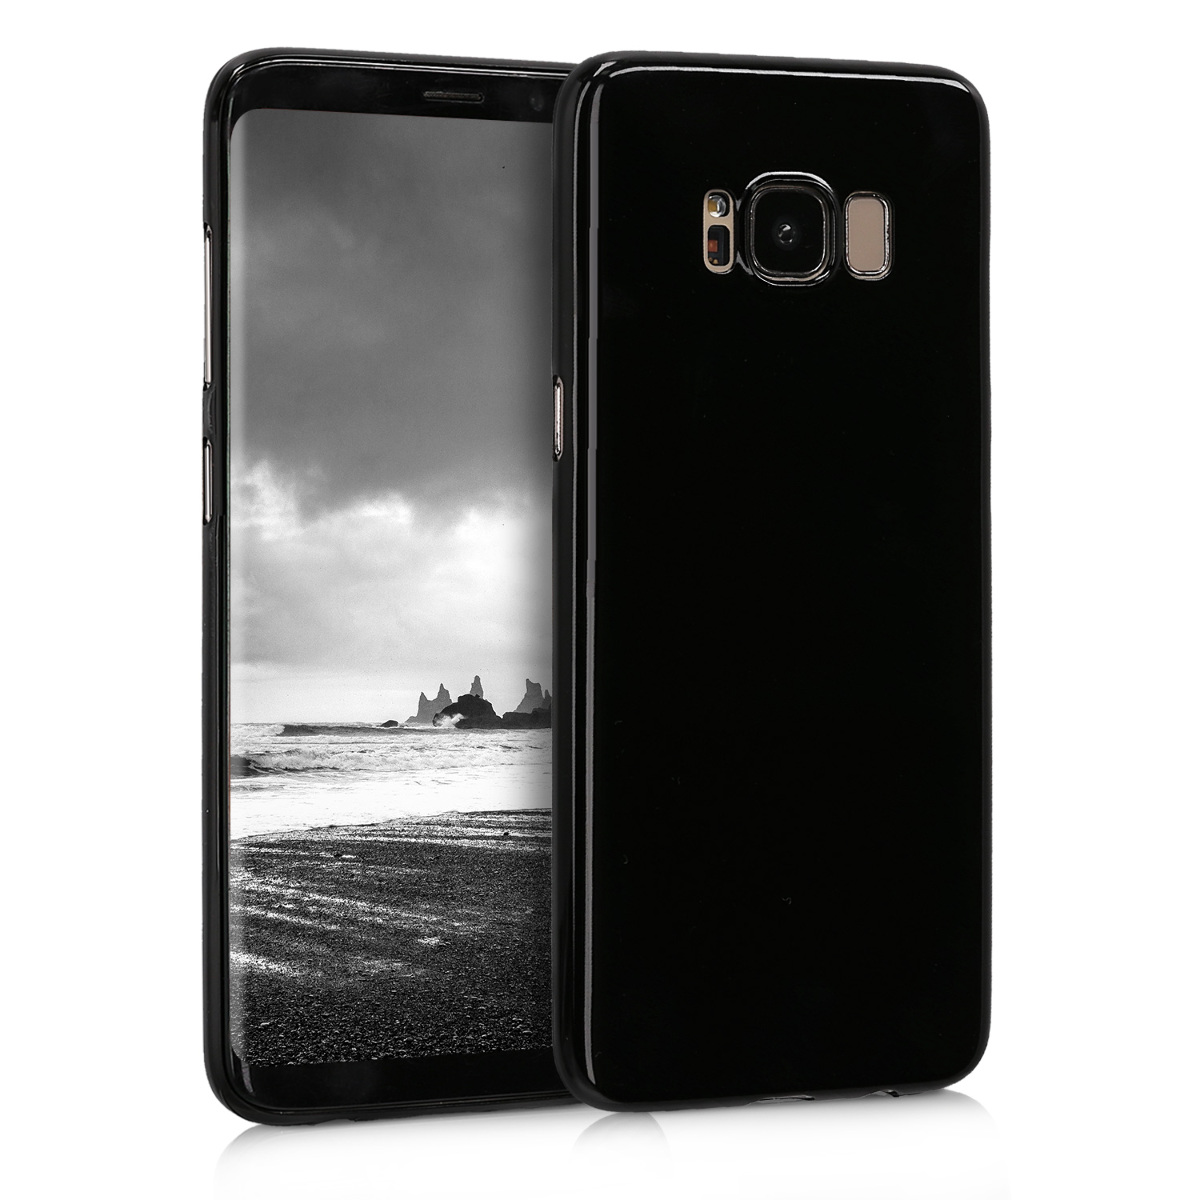 Kvalitní plastové pouzdro pro Samsung S8 - černé vysoký lesk